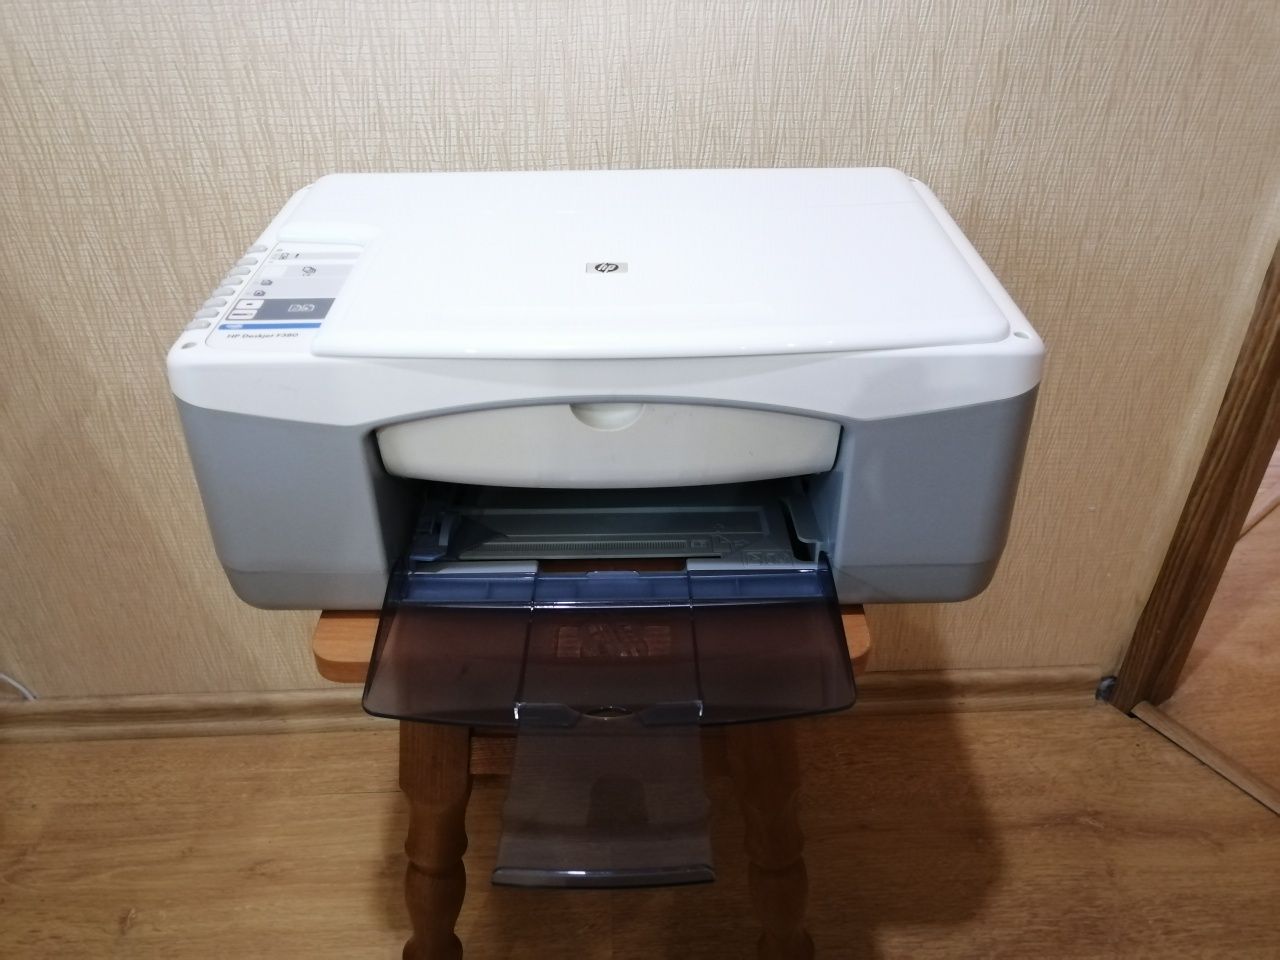 Продается принтер Hp deskjet f380